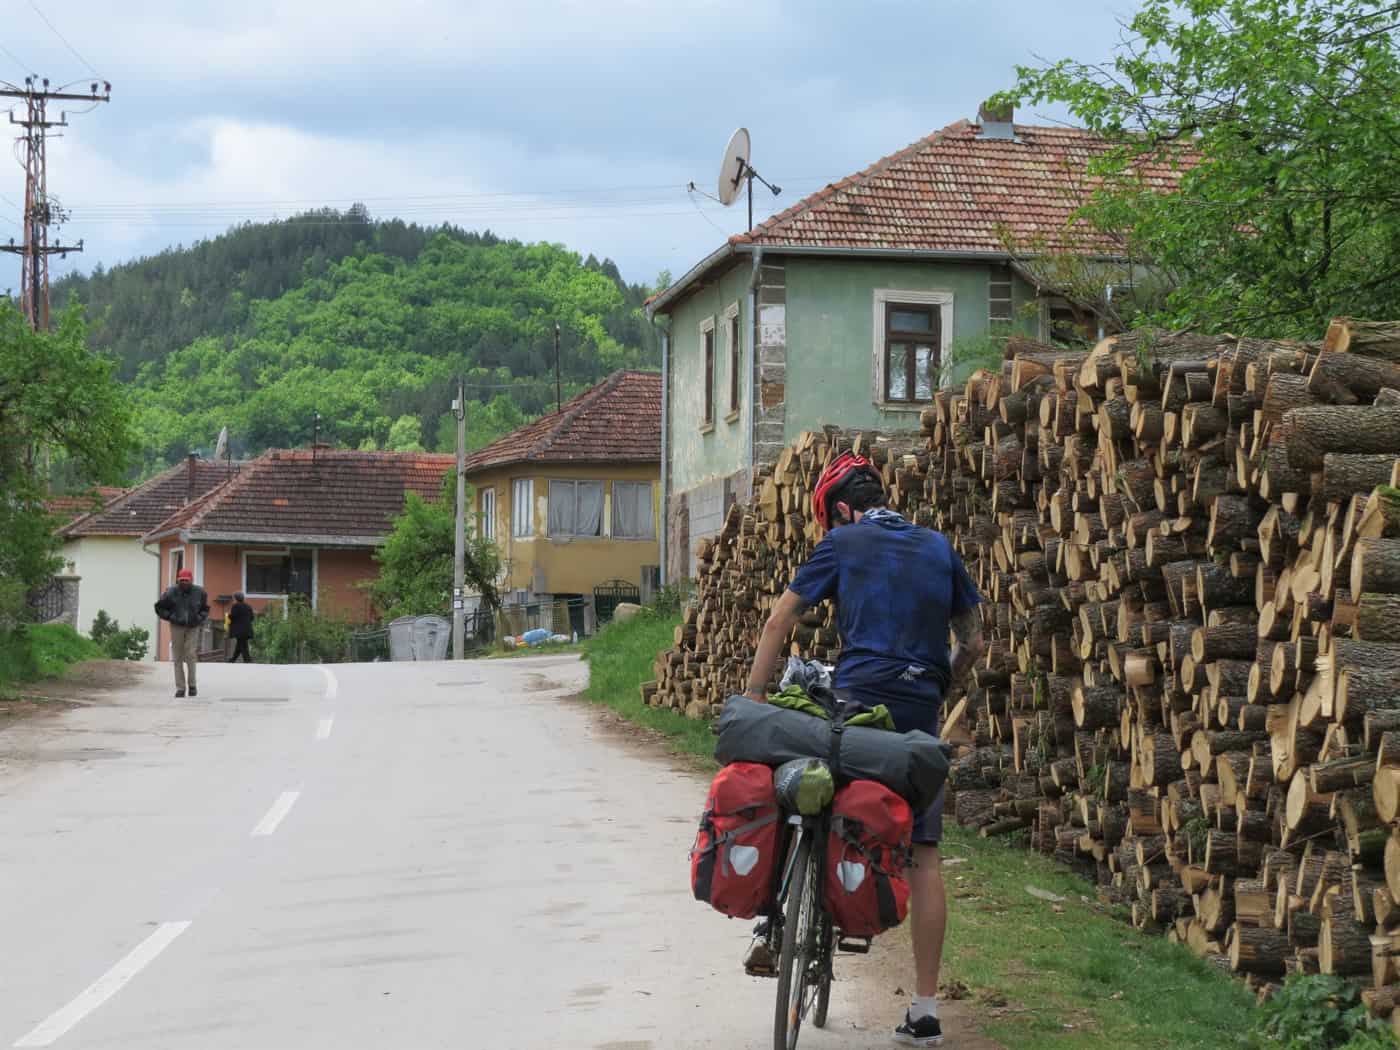 דרך כפרית בסרביה